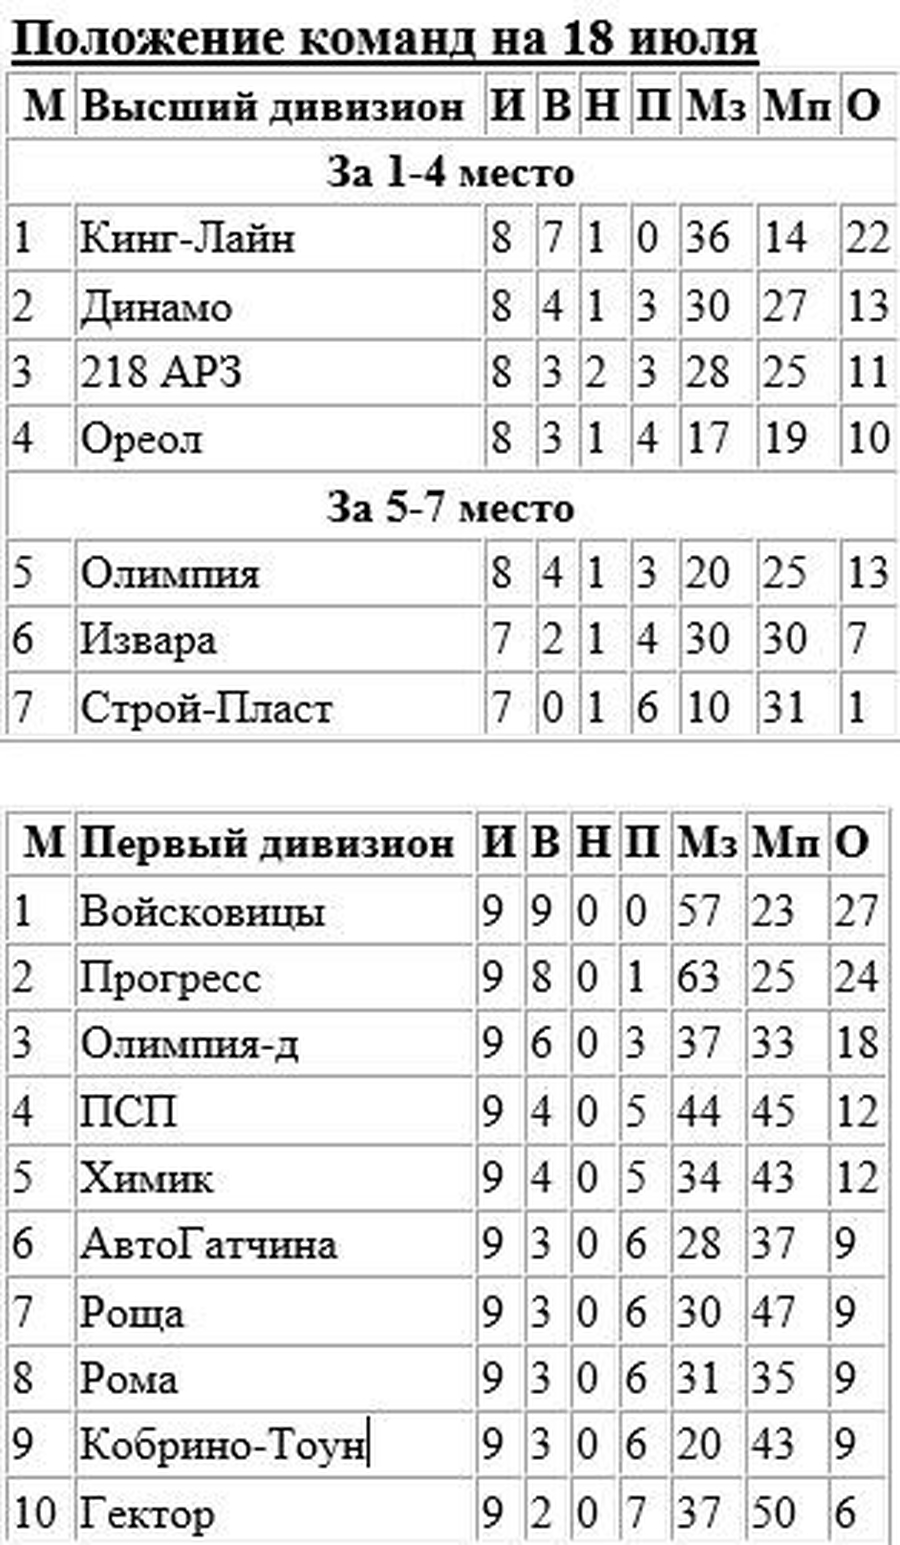 «Динамо», «218 АРЗ» и «Ореол» - претенденты на футбольное 